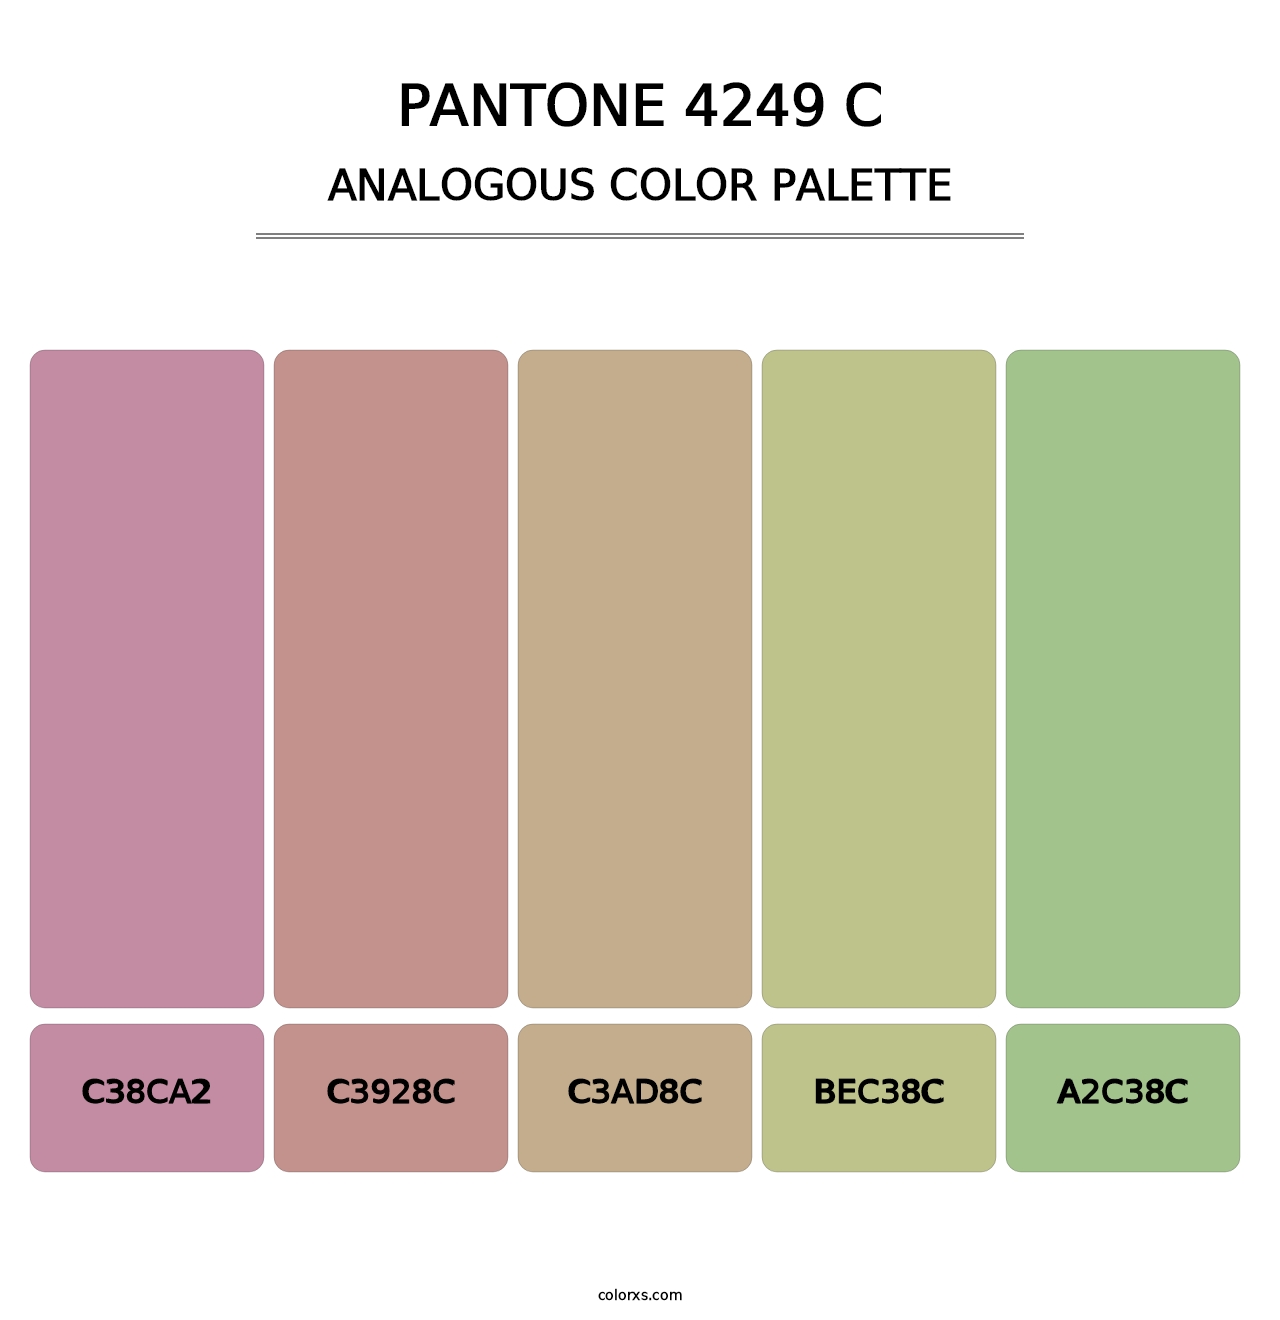 PANTONE 4249 C - Analogous Color Palette